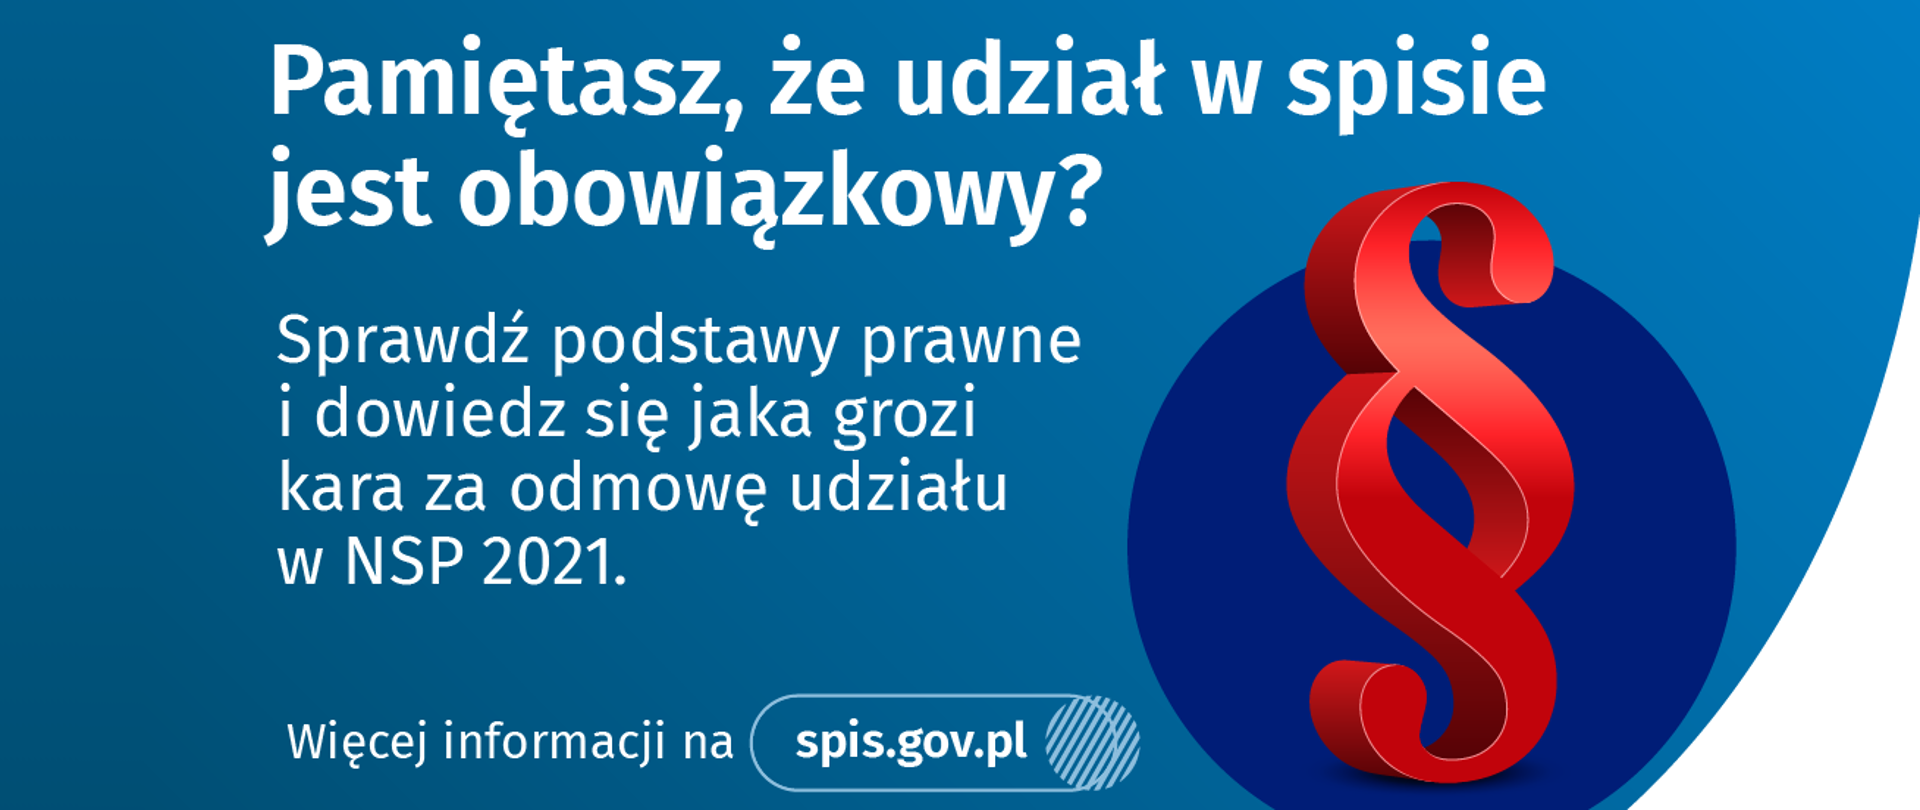 Tekst "Pamiętasz, że udział w spisie jest obowiązkowy? Sprawdź podstawy prawne i dowiedz się jaka grozi kara za odmowę udziału w NSP 2021. Więcej informacji na spis.gov.pl"